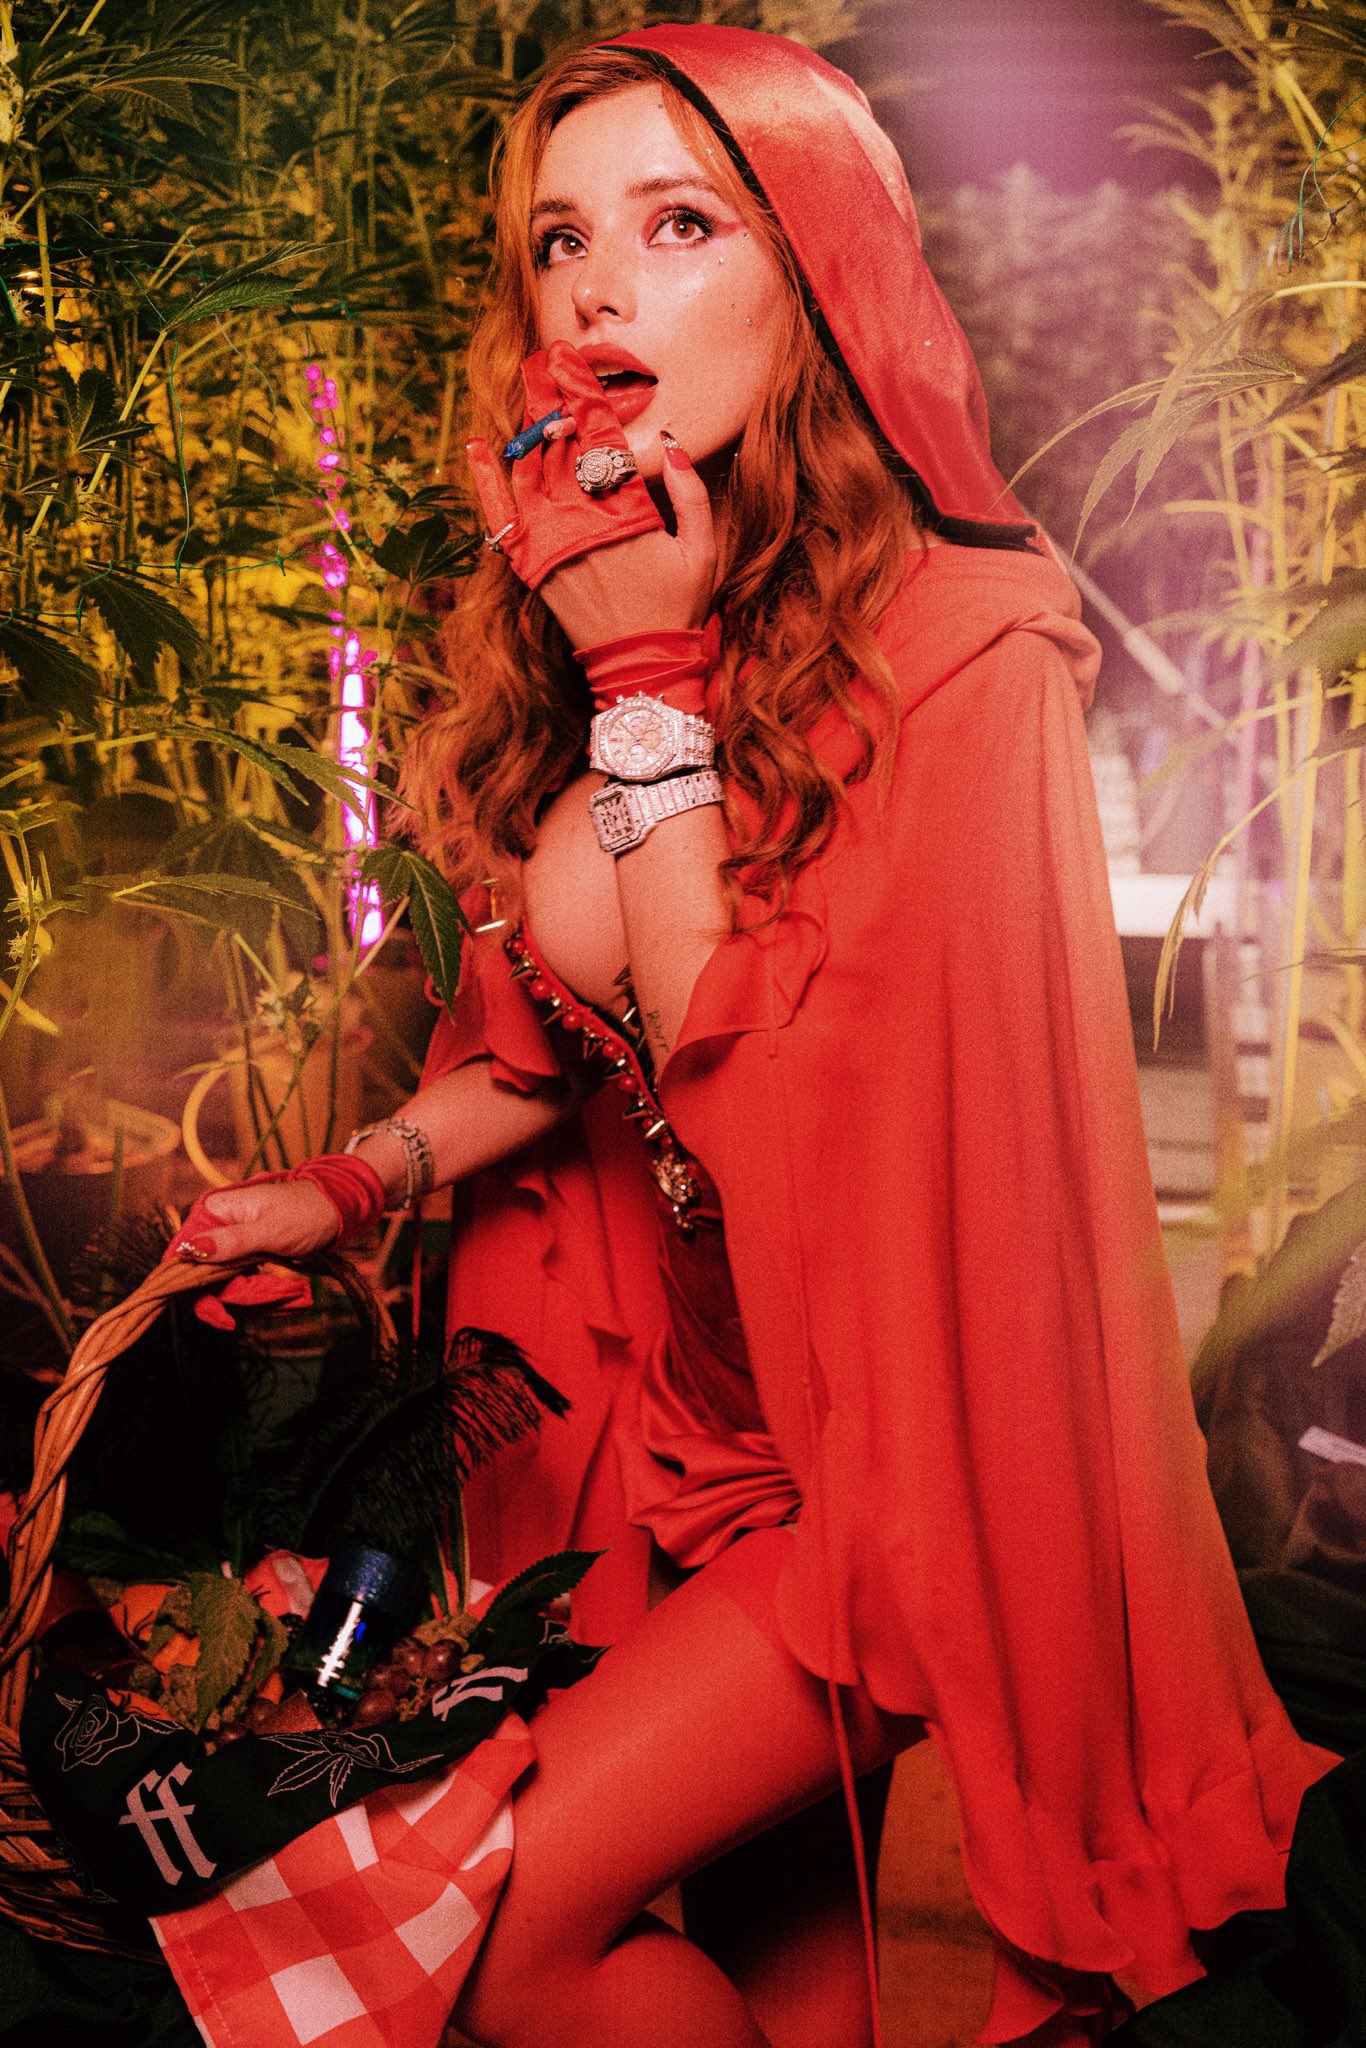 FOTOS Bella Thorne est al rojo vivo en la alfombra roja! - Photo 11